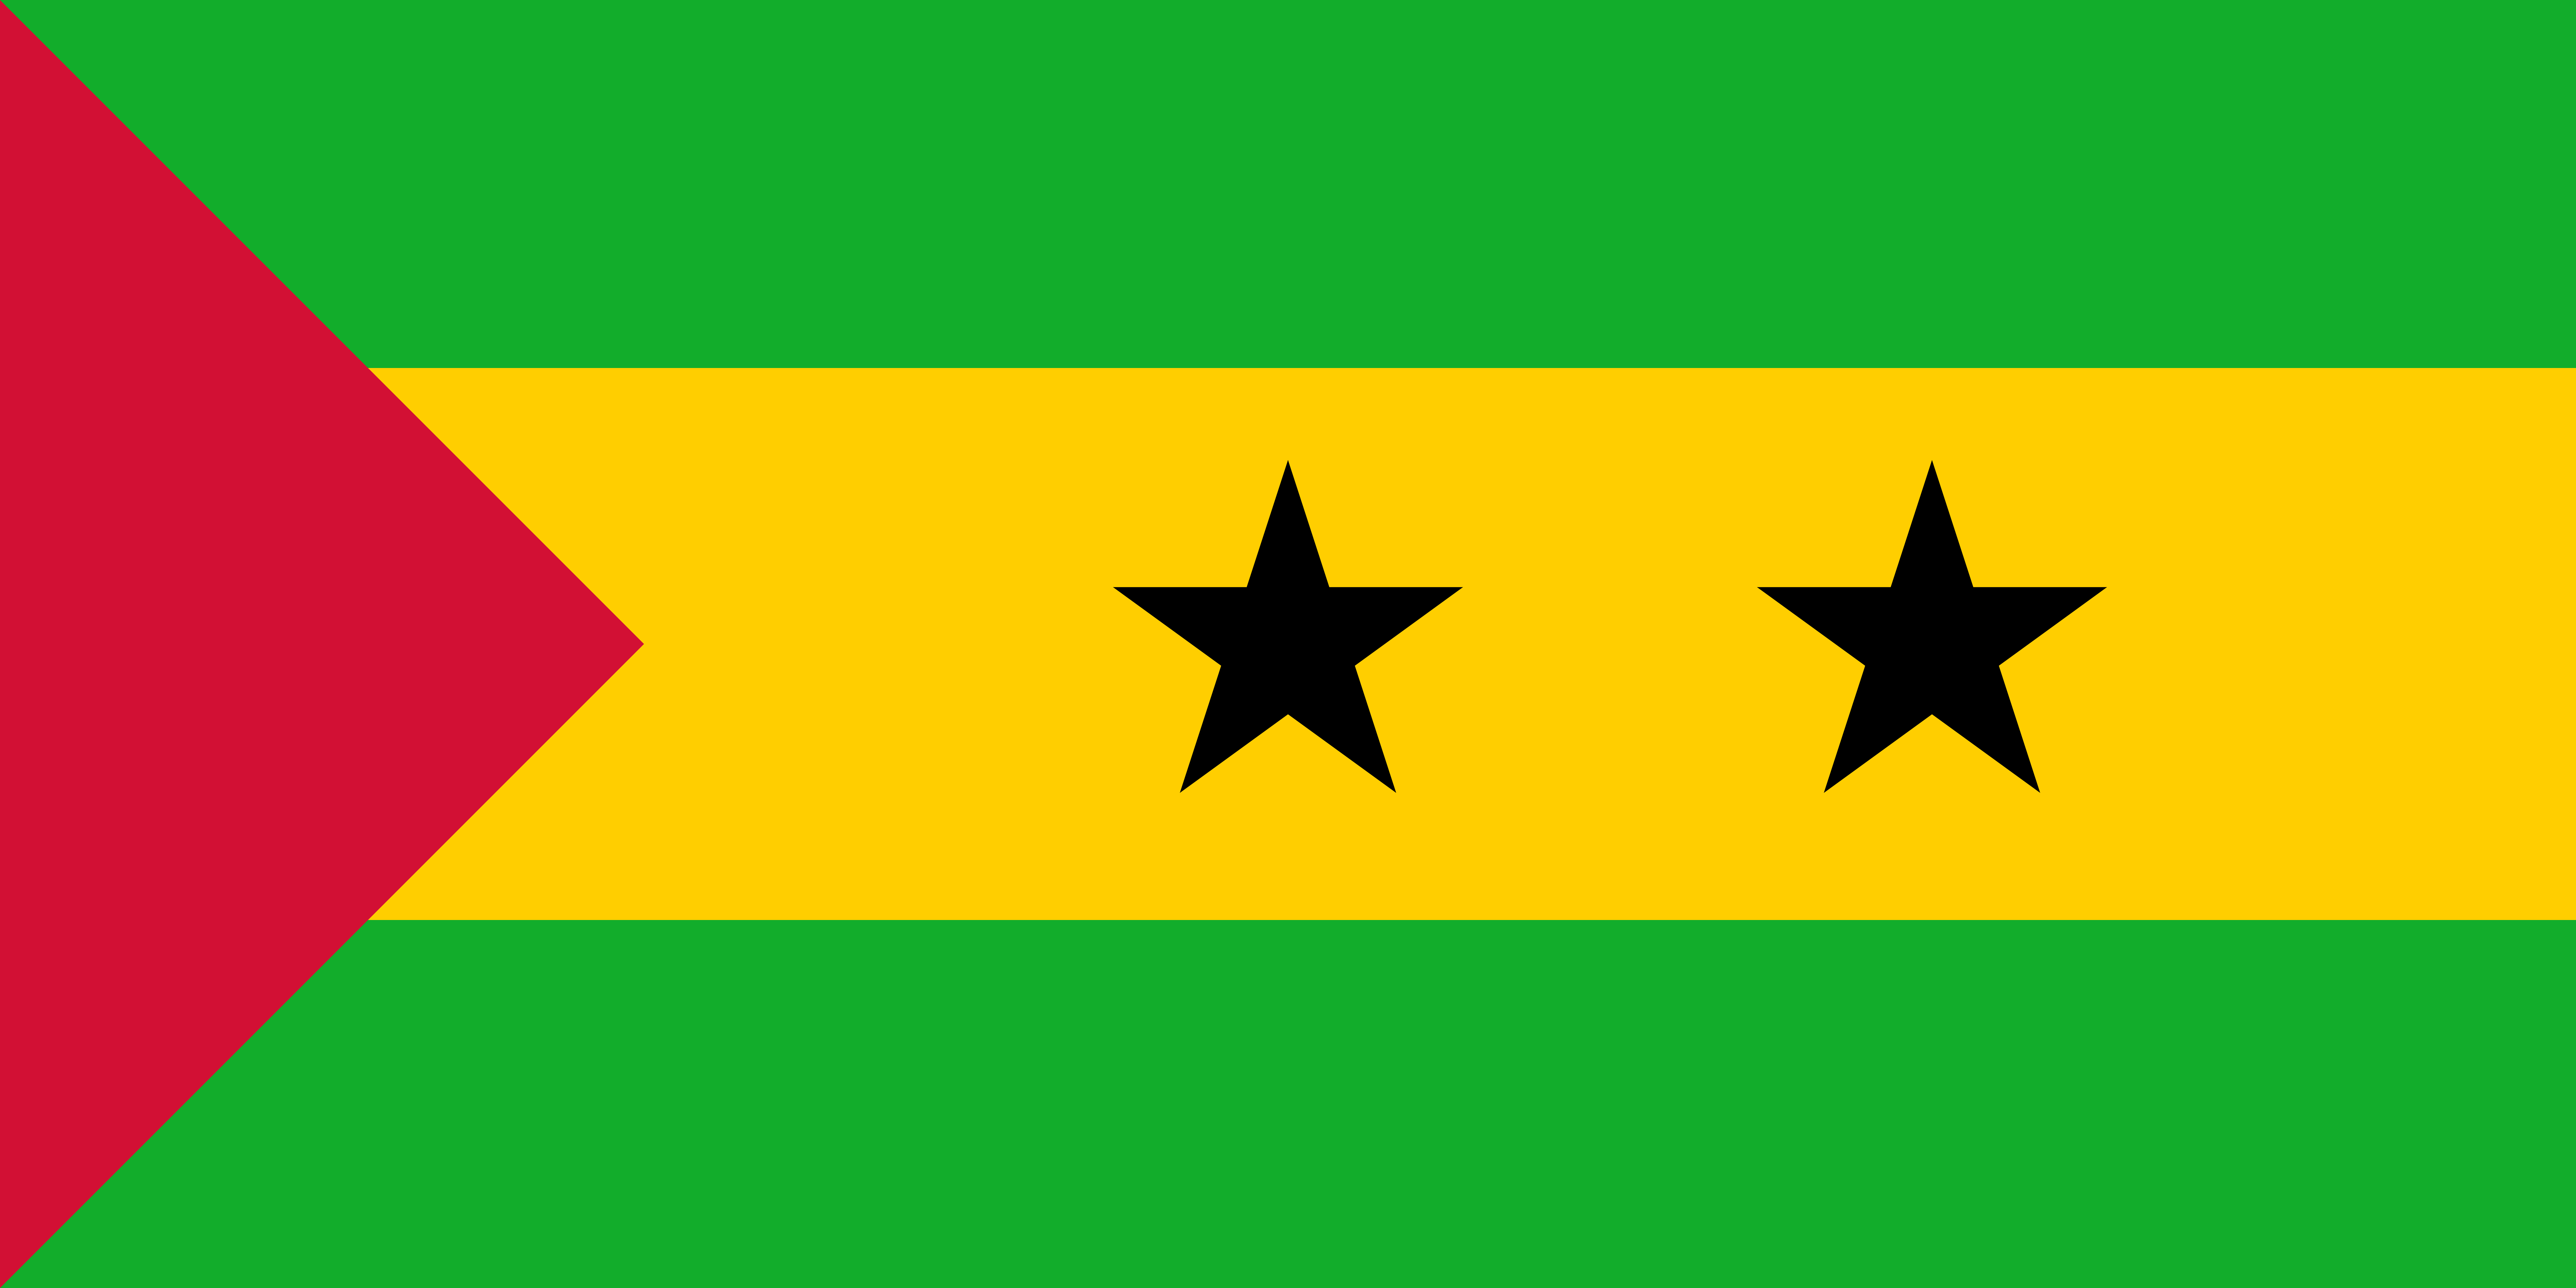 Sao Tome and Principe Flag Image - Free Download